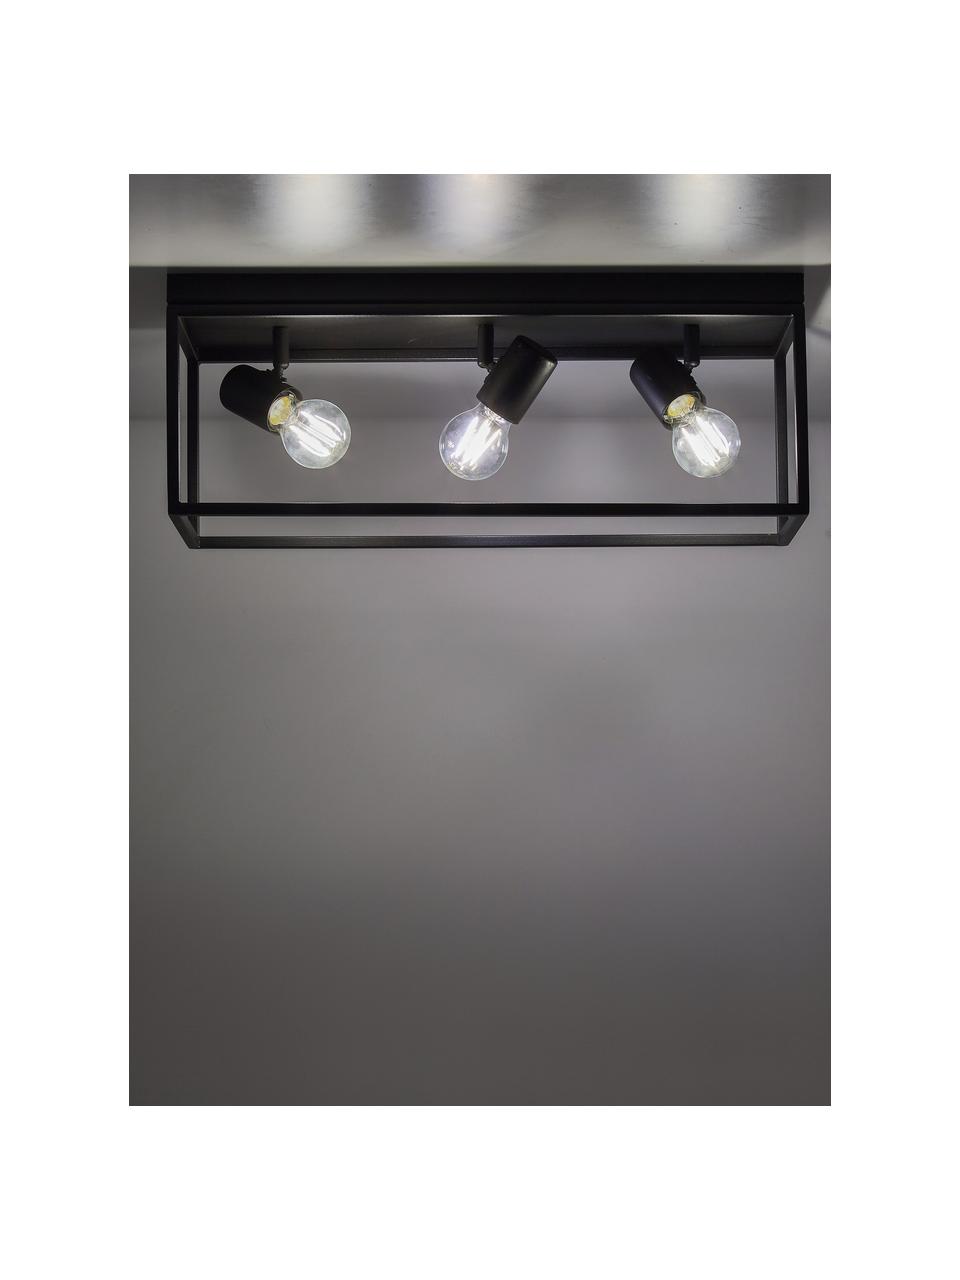 Lampa sufitowa Silentina, Czarny, S 54 x W 21 cm